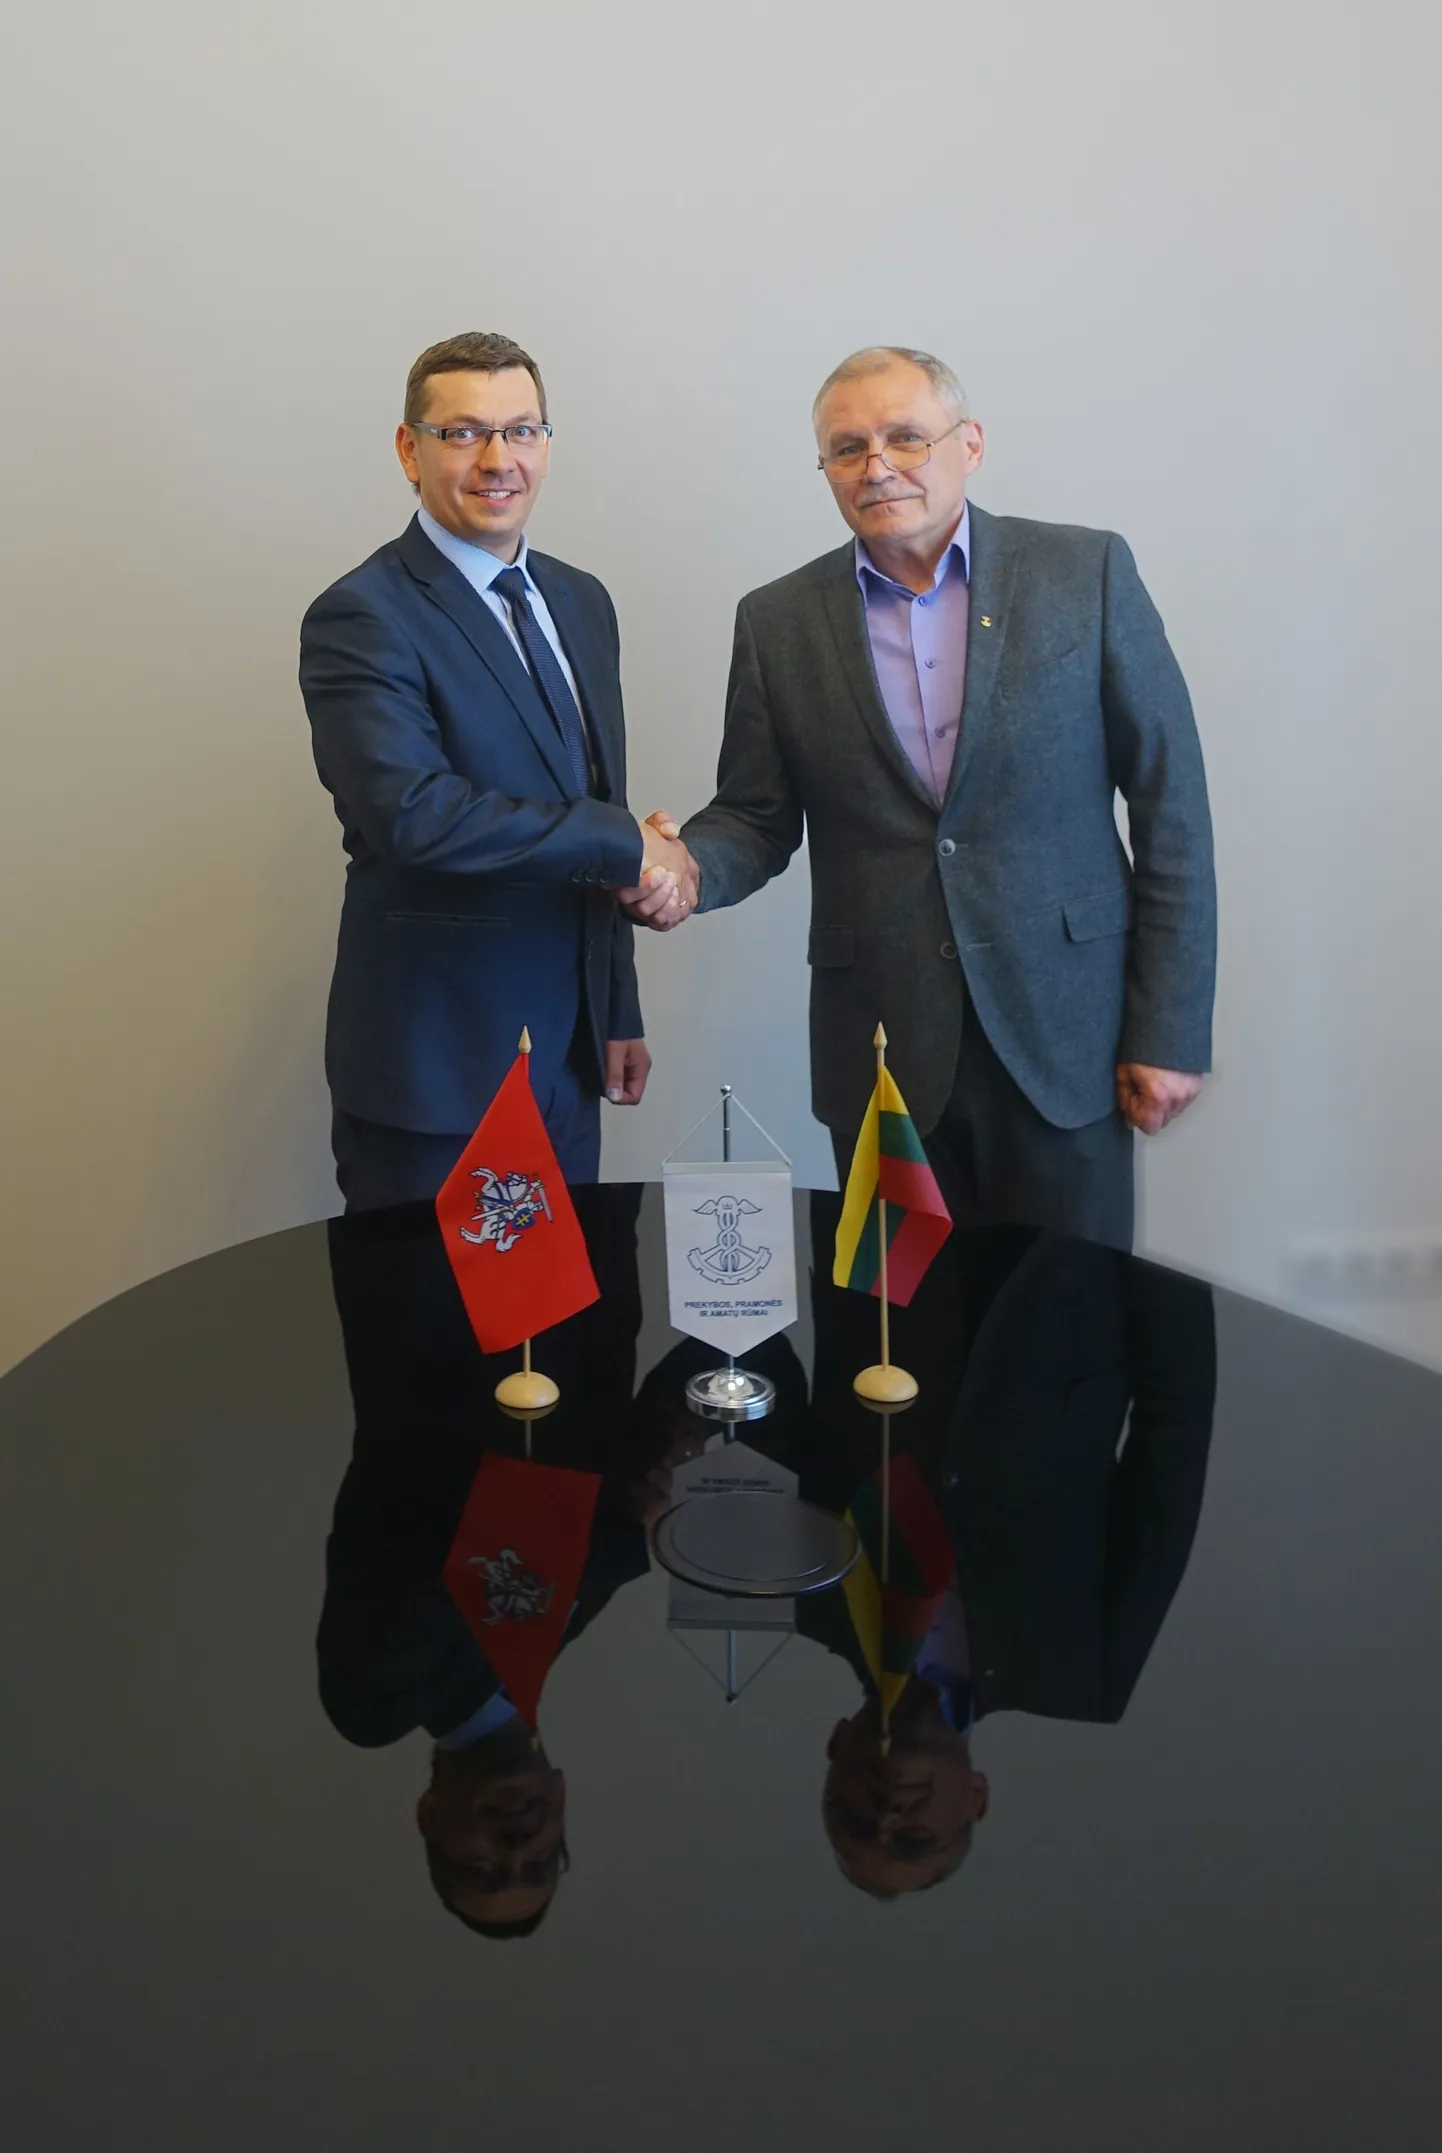 Leedu kaubanduskoja juht Rimantas Šidlauskas (vasakul) koos Antanas Gedvilasega.